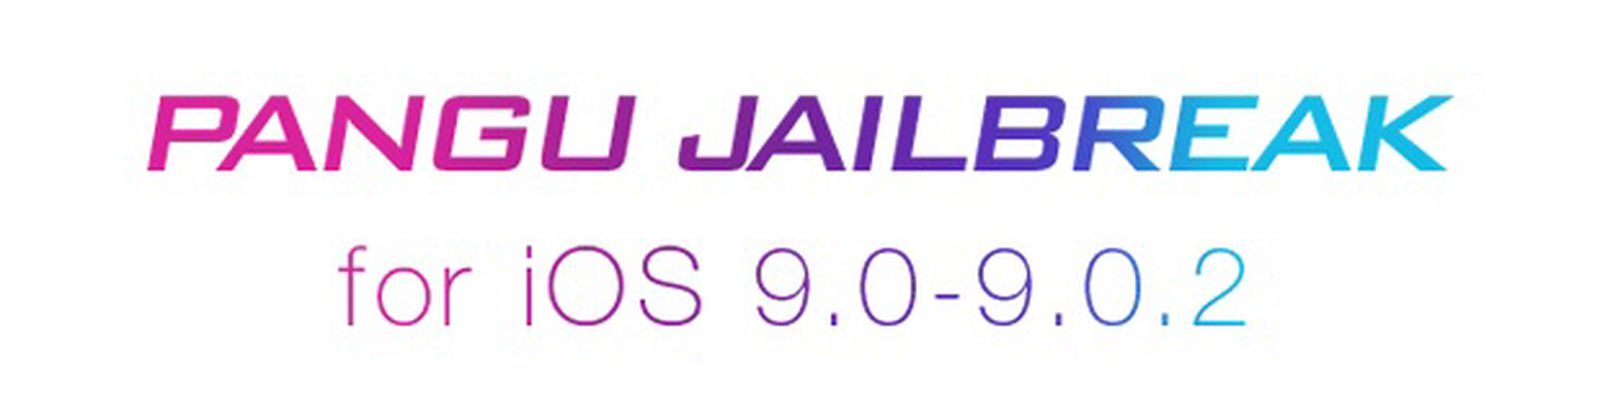 ios9 pangu jailbreak